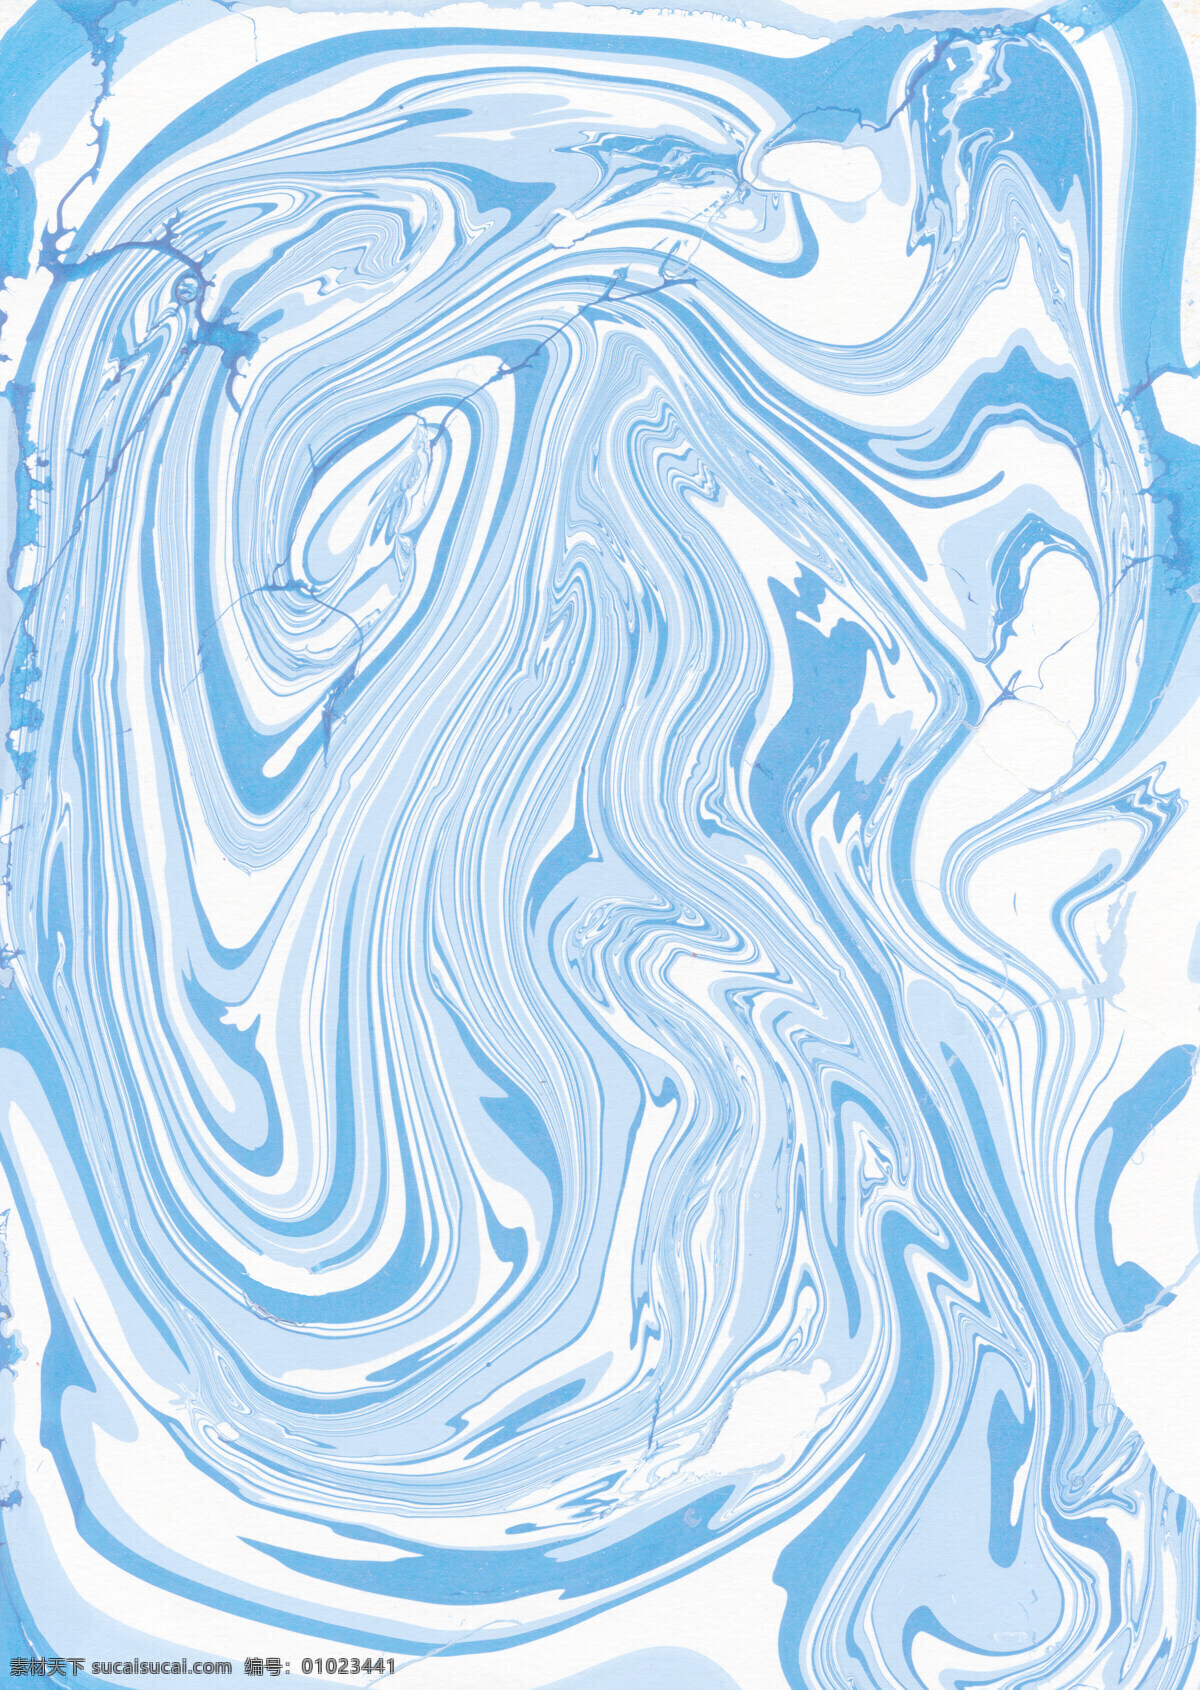 清新 养眼 蓝色 花纹 壁纸 图案 装饰设计 蓝色花纹 壁纸图案 不规则纹理 随性风格